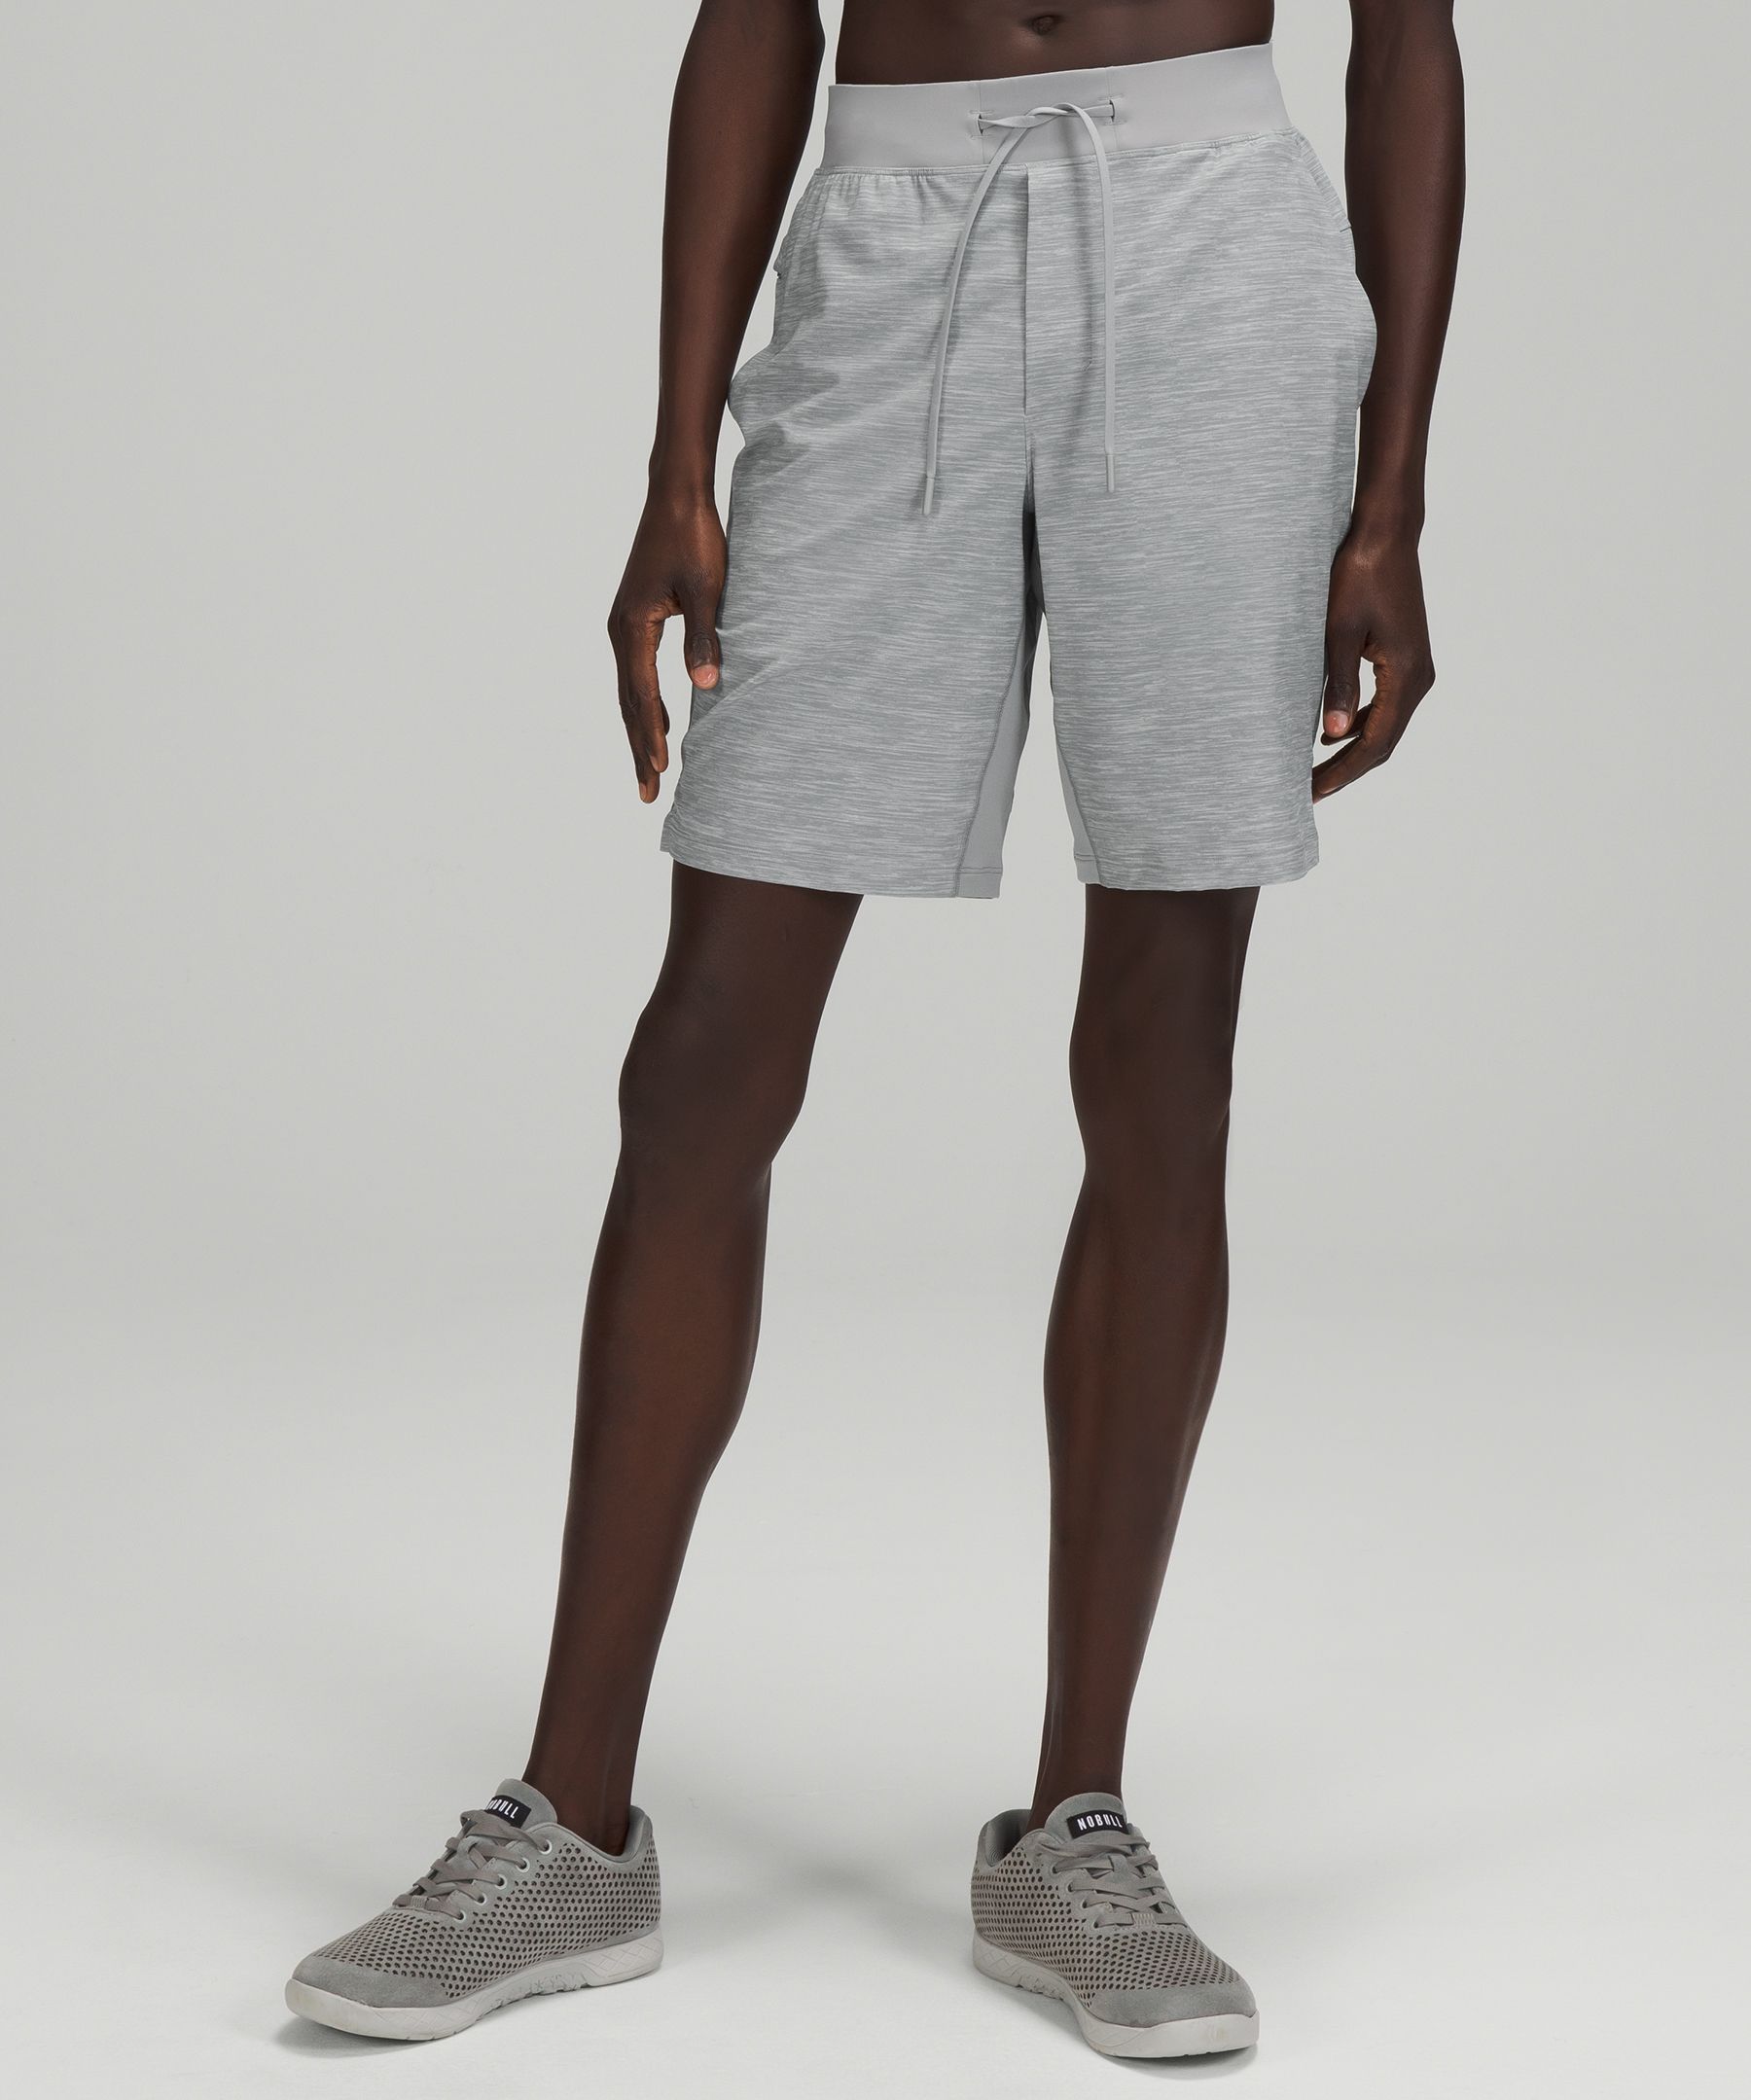 grey lululemon shorts